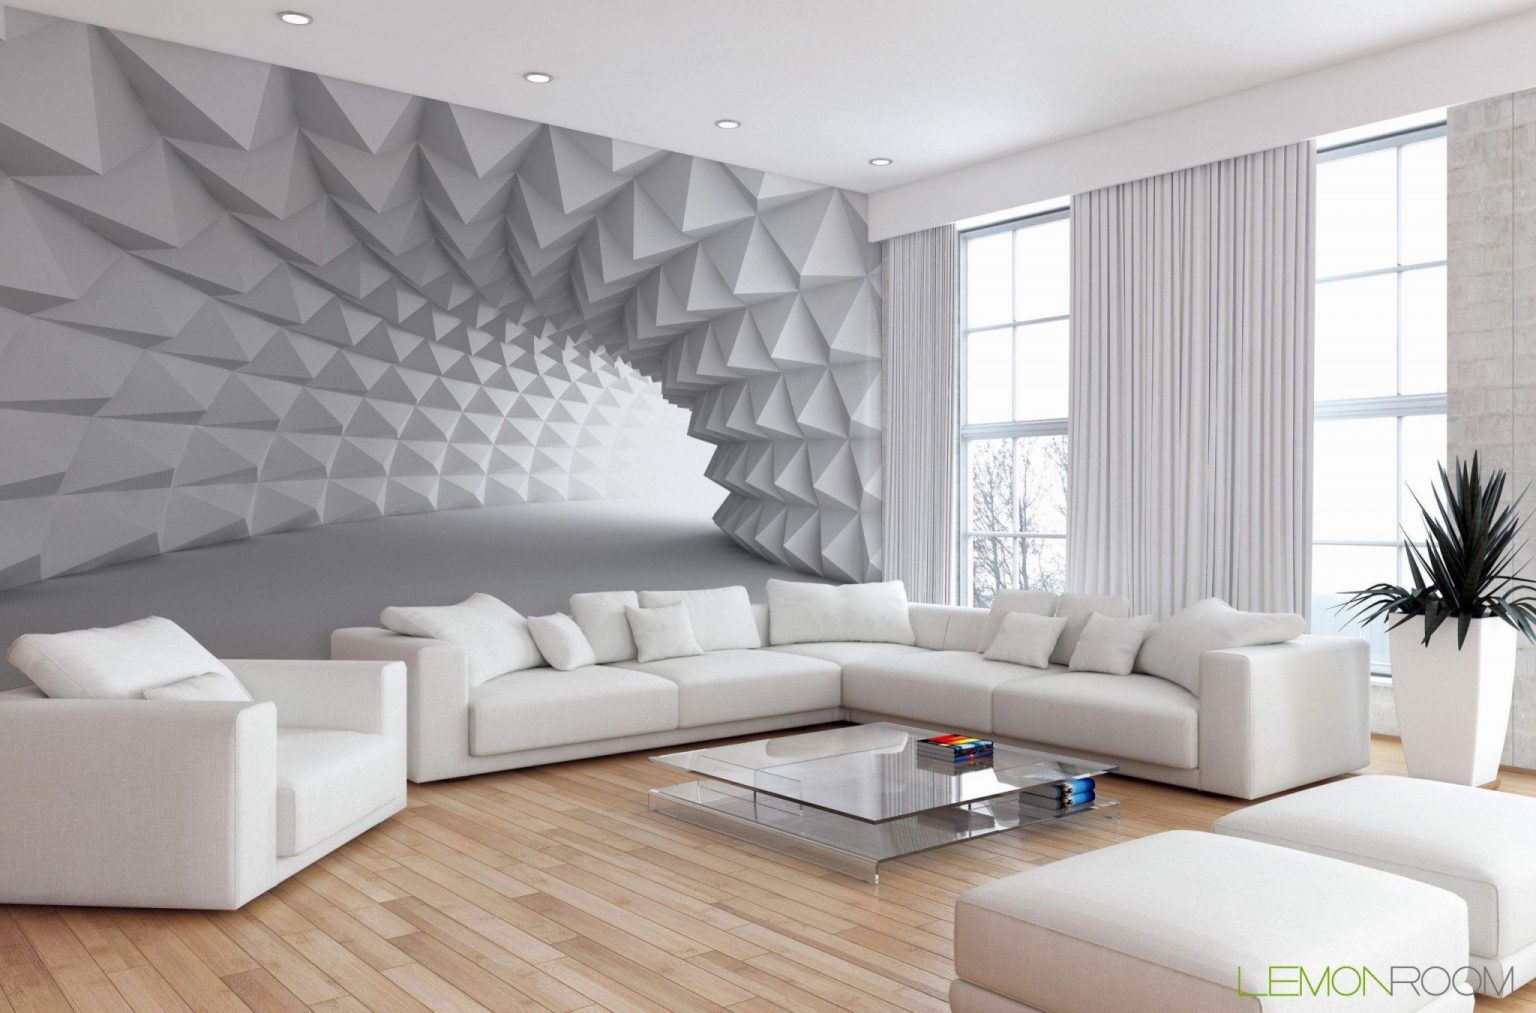 Außergewöhnliche Wohnzimmer Ideen Tapeten 23 In 2020 von Tapeten Für